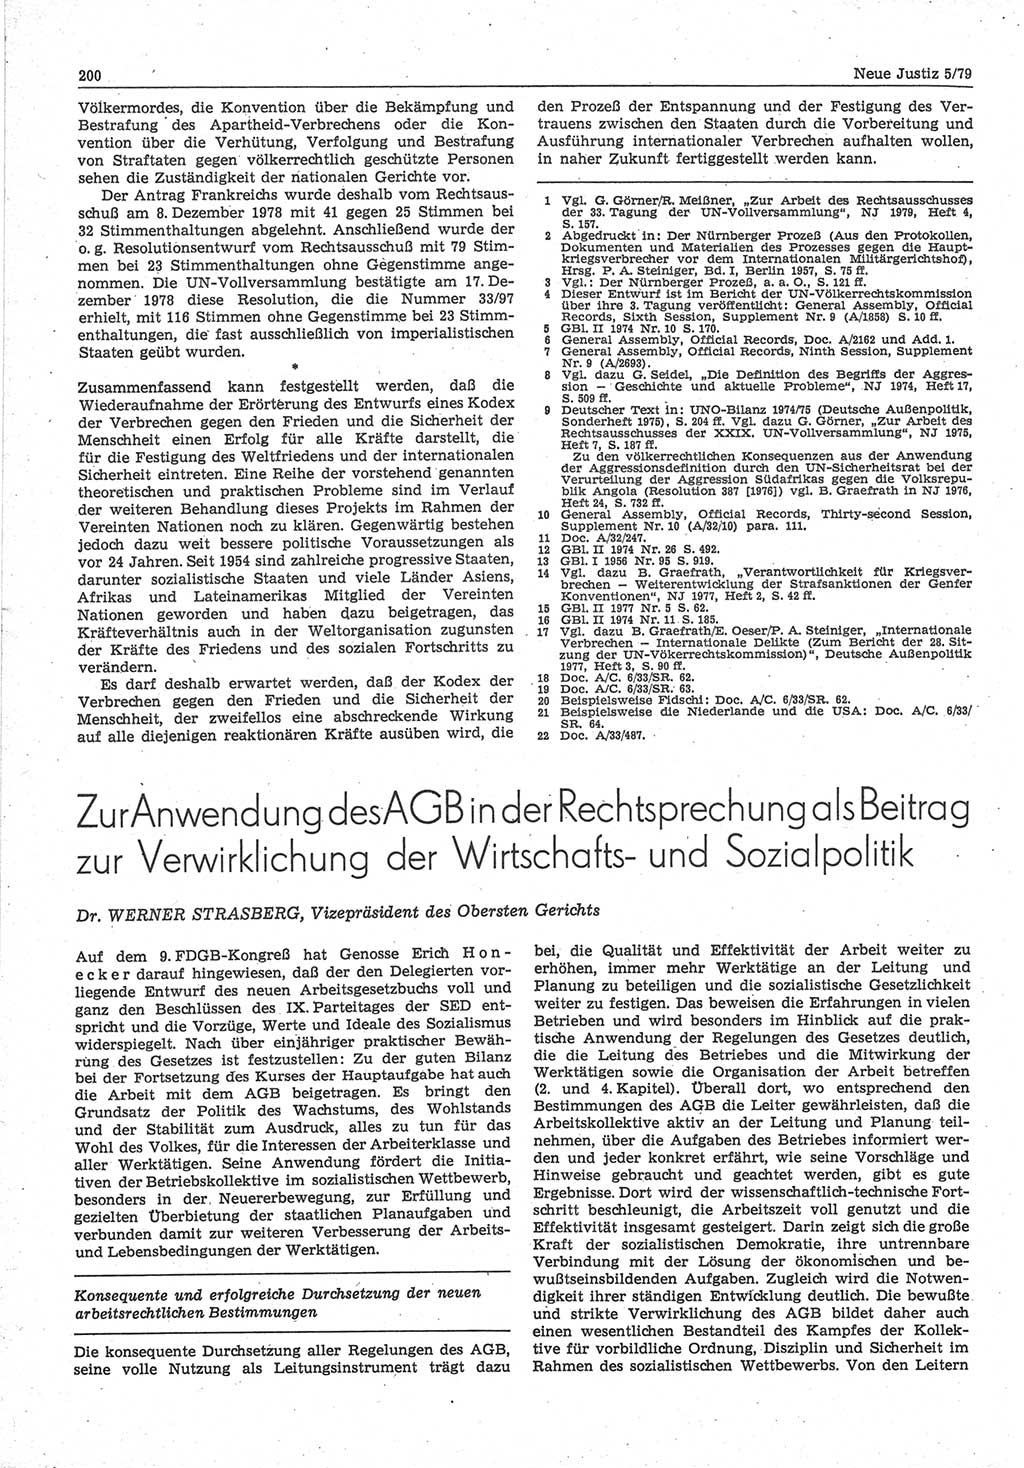 Neue Justiz (NJ), Zeitschrift für sozialistisches Recht und Gesetzlichkeit [Deutsche Demokratische Republik (DDR)], 33. Jahrgang 1979, Seite 200 (NJ DDR 1979, S. 200)